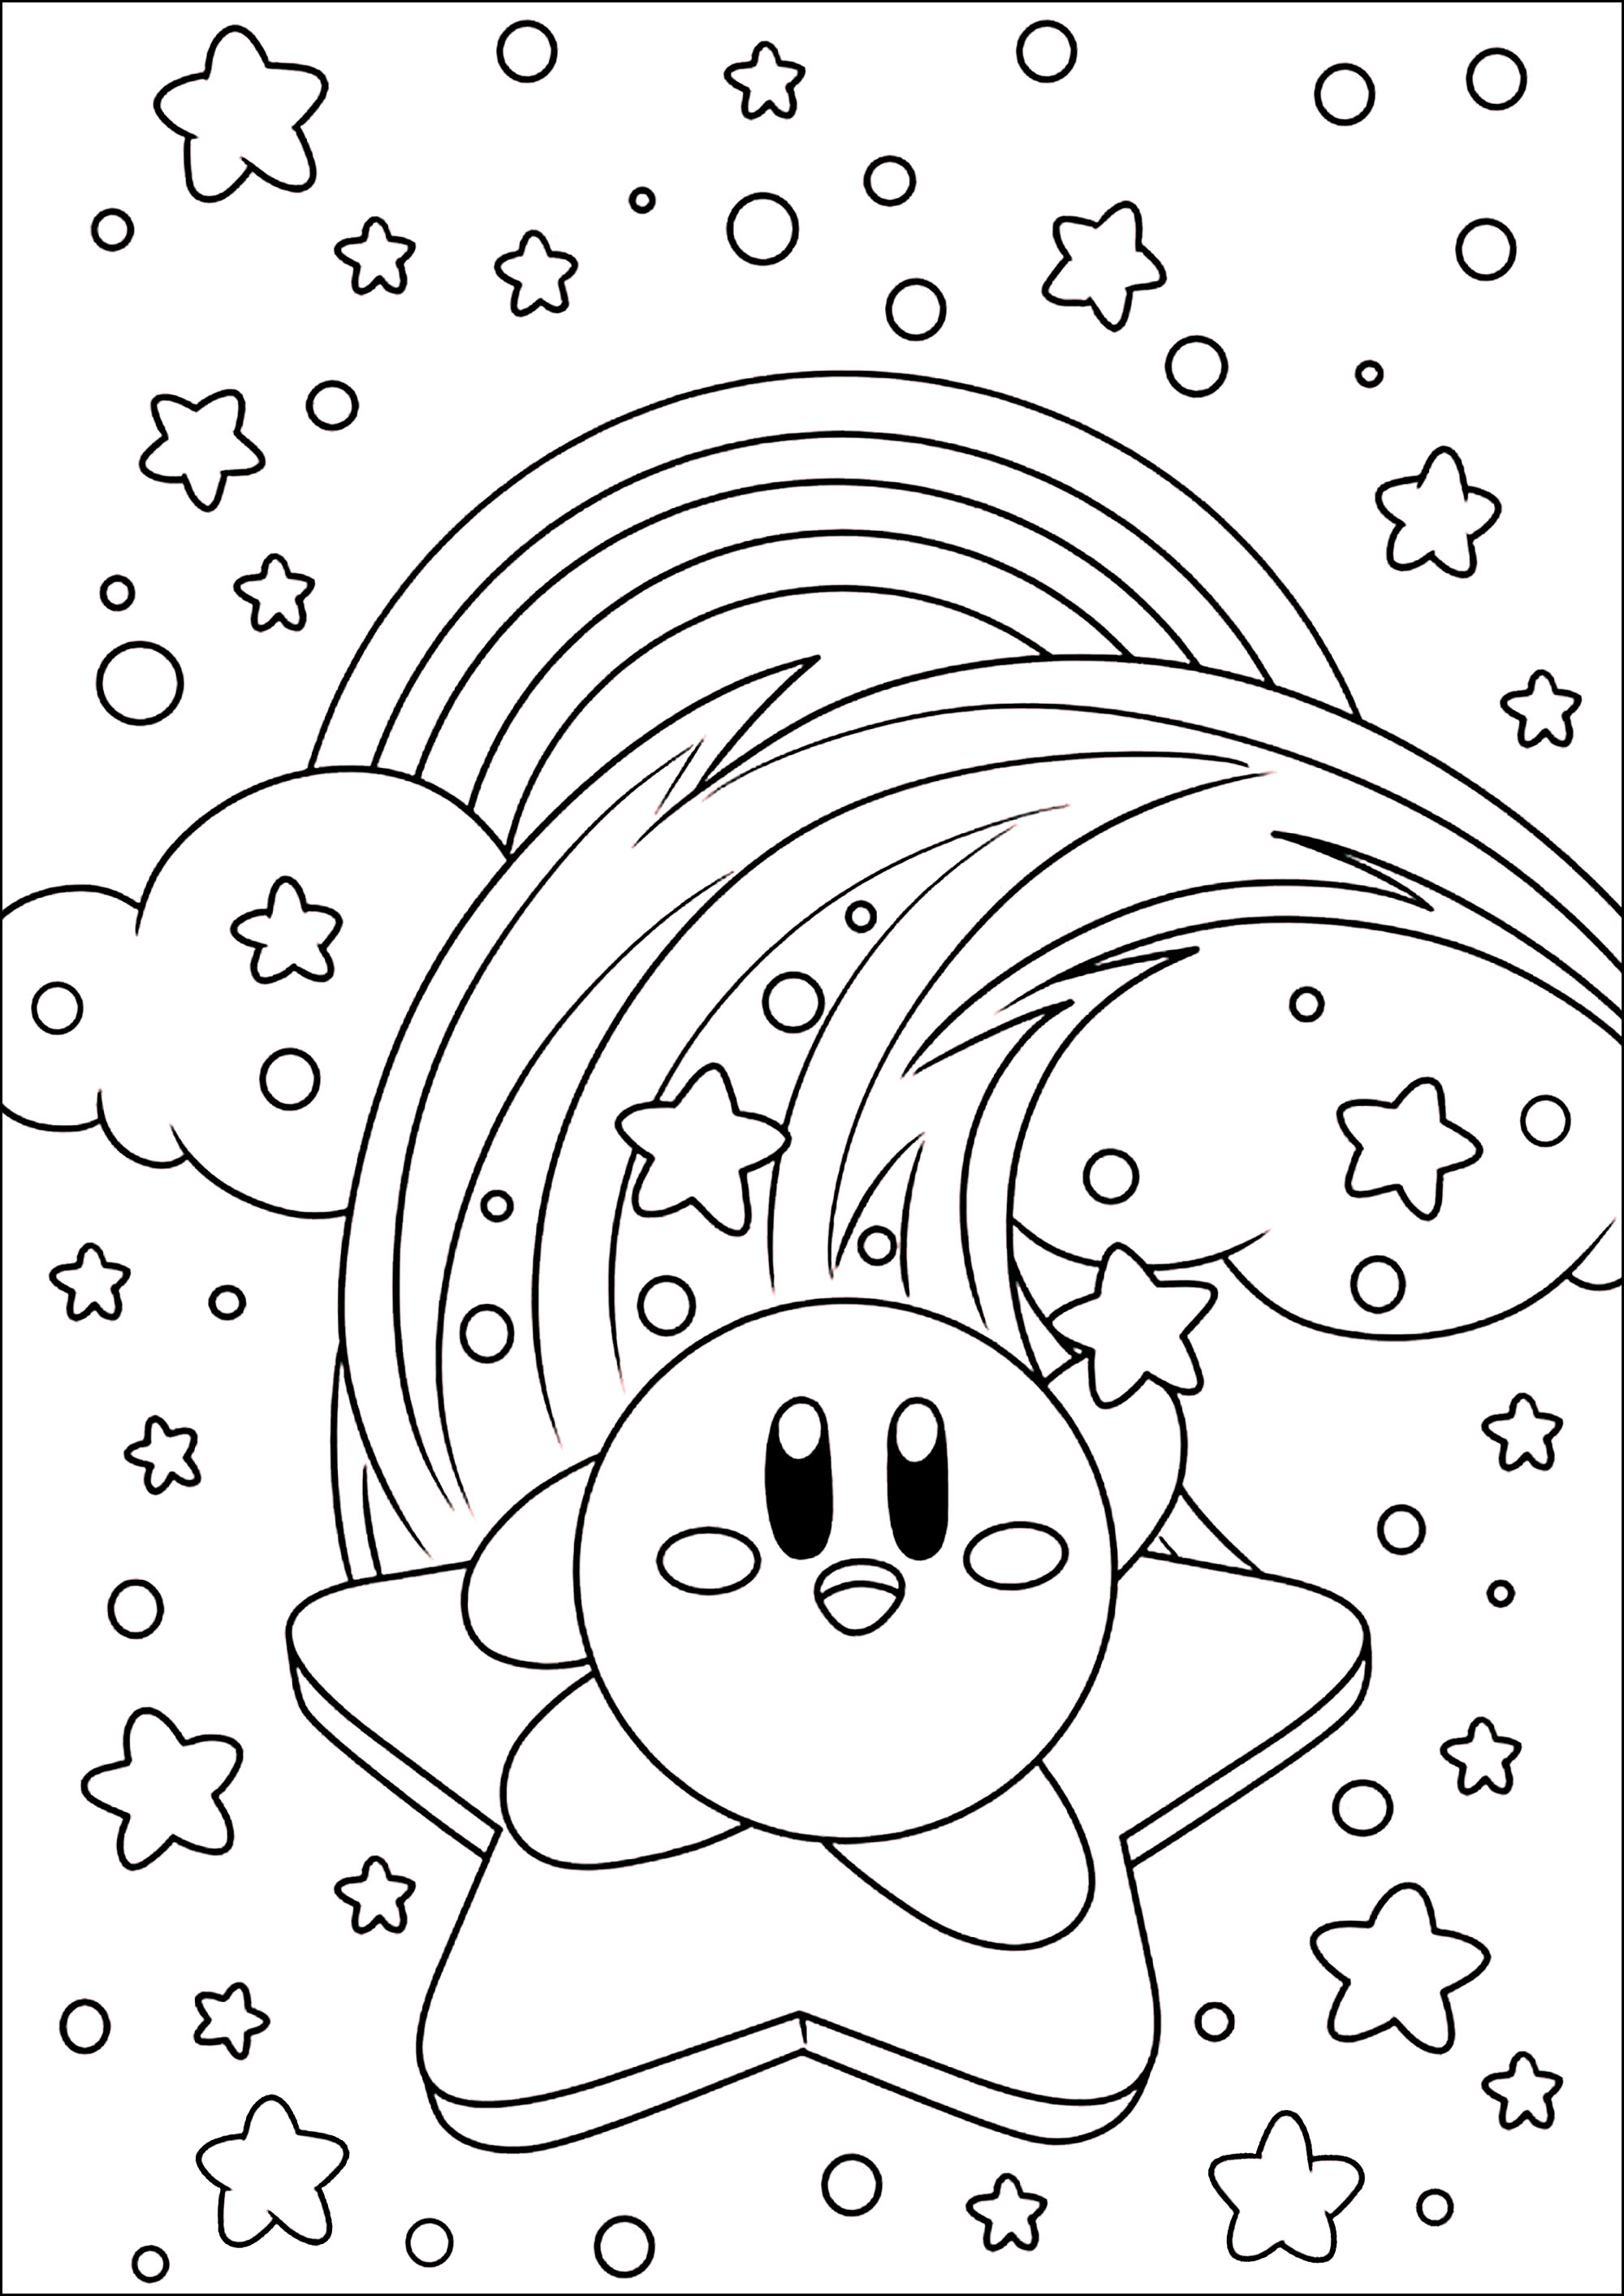 Kirby sobre una estrella en el cielo con nubes y arco iris. Kirby (カービィ, Kābī, pronunciado en japonés: [kaːbiː]) es un personaje de videojuegos, creado por Masahiro Sakurai para la compañía Nintendo. Es una bolita rosa del planeta Popstar que succiona a sus enemigos para 'copiar' sus poderes.